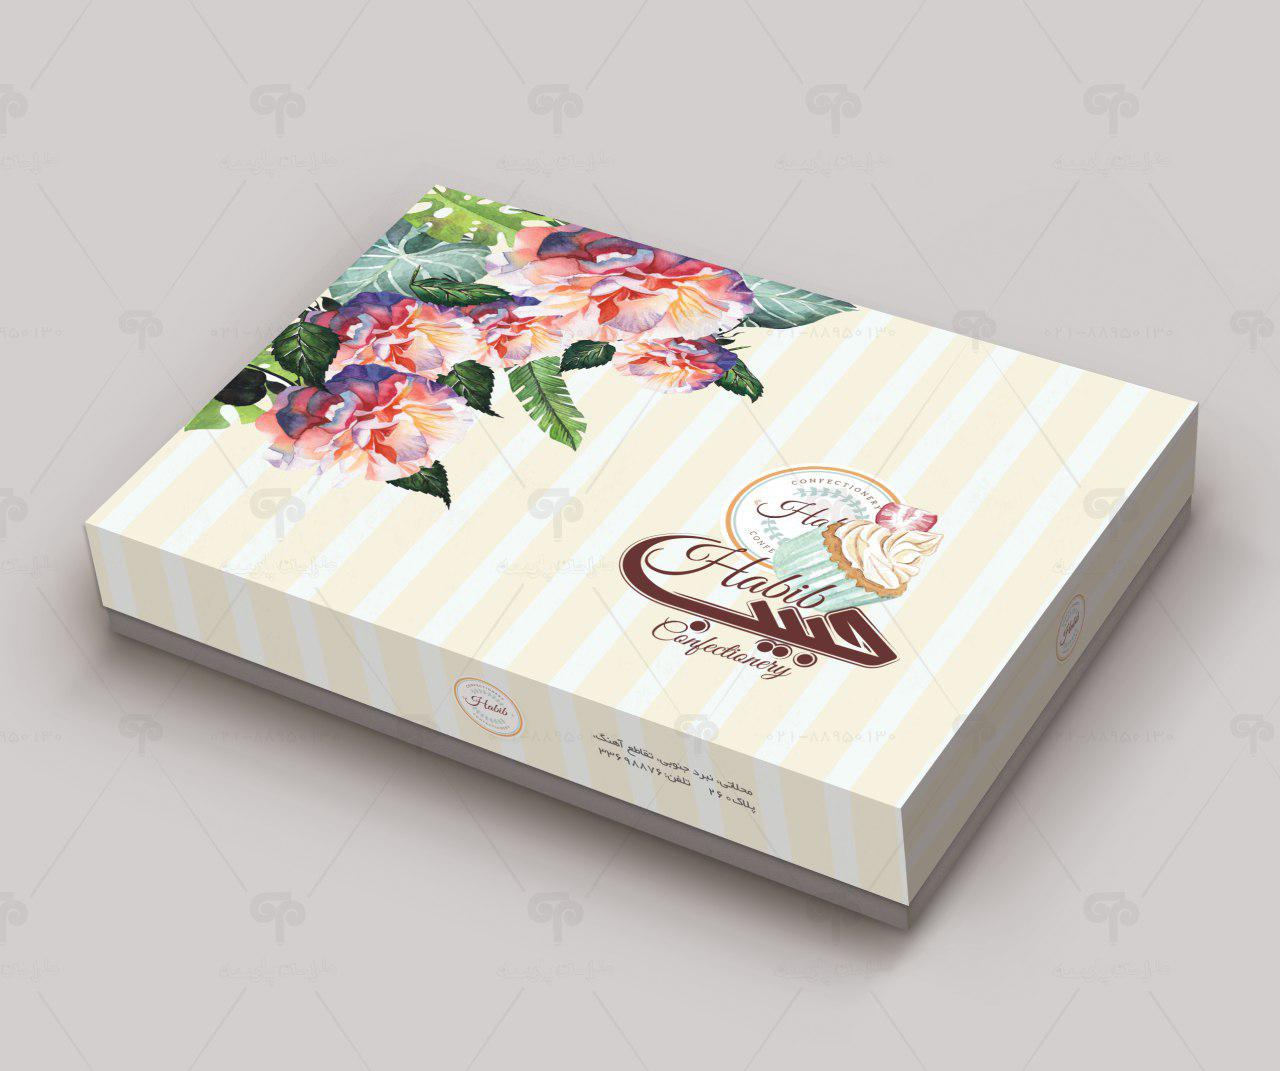 طراحی جعبه شیرینی حبیب